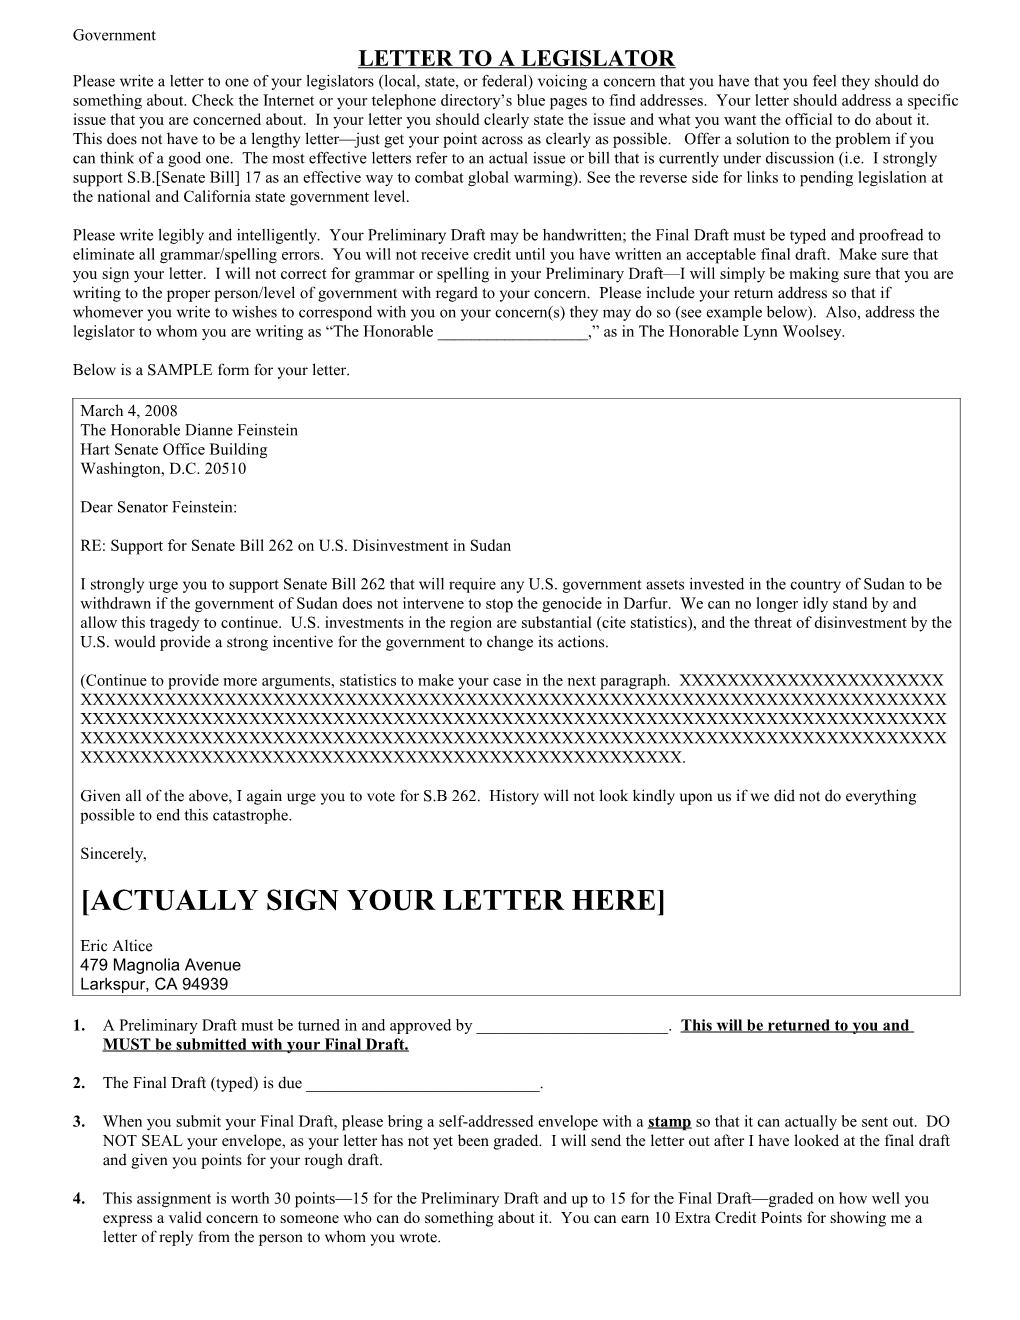 Letter to a Legislator